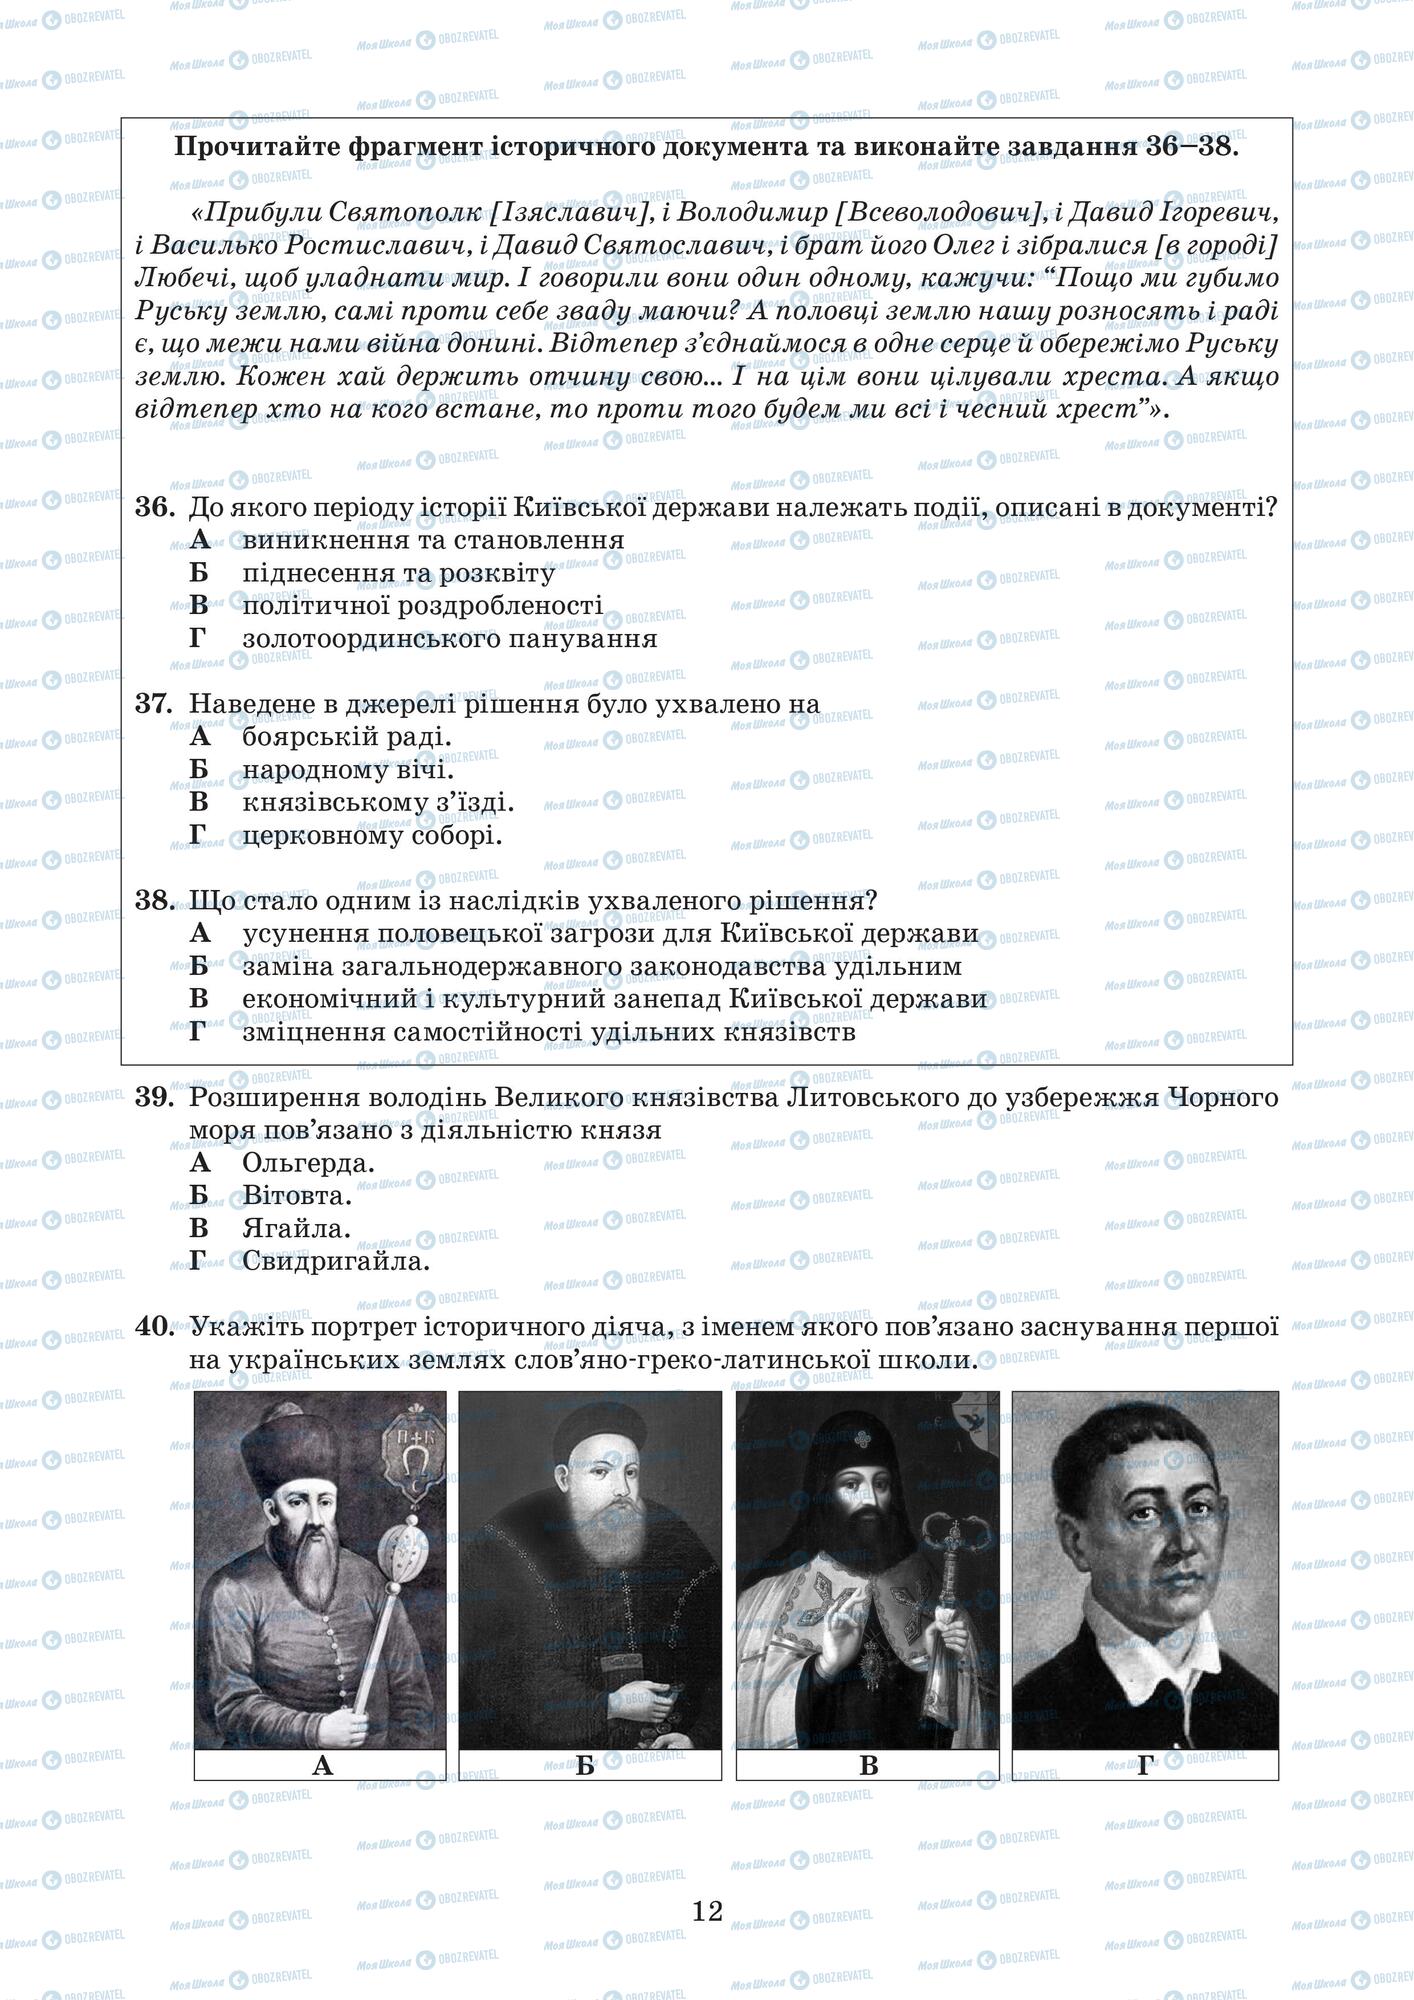 ЗНО История Украины 11 класс страница  11